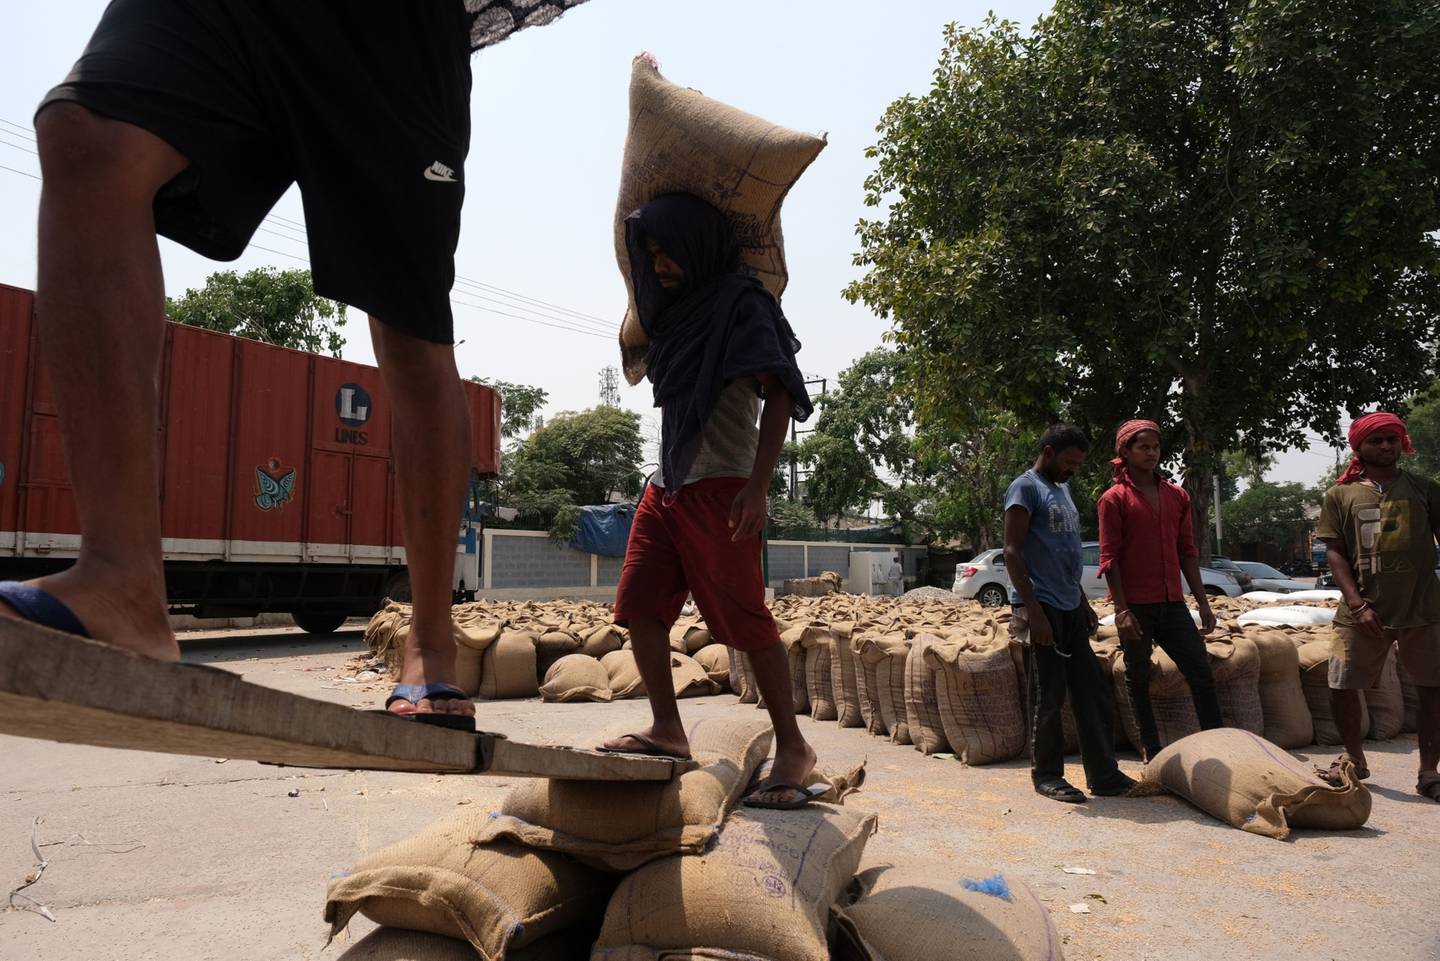 Trabajadores cargan sacos de trigo en un camión en el mercado de cereales en el distrito de Khanna de Punjab, India, el sábado 30 de abril de 2022. Una ola de calor abrasador ha quemado los campos en la India, reduciendo los rendimientos en el segundo mayor productor y amortiguando las expectativas de las exportaciones en las que el mundo confía para aliviar la escasez mundial.